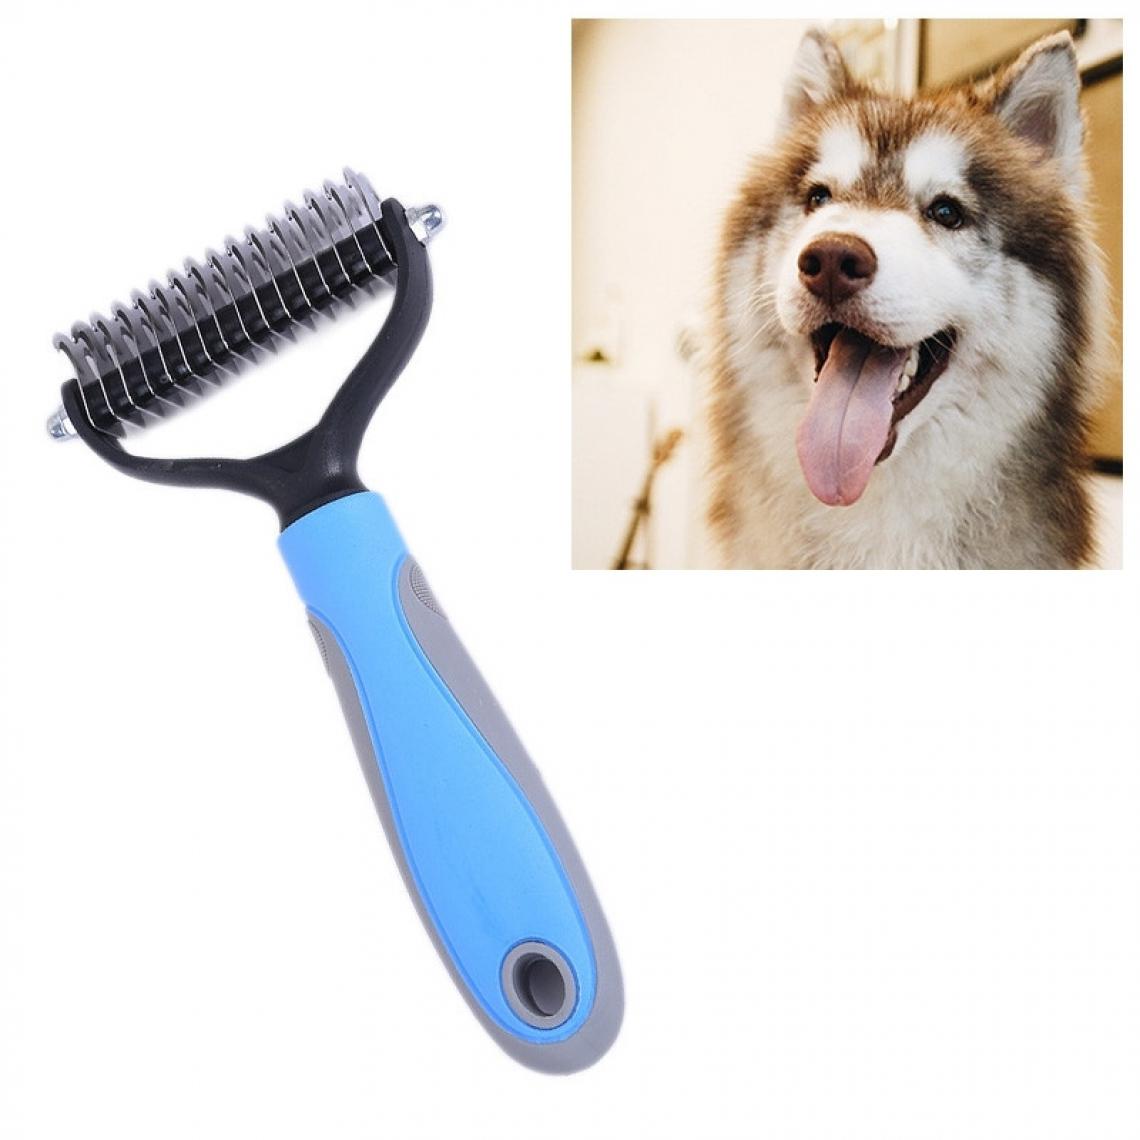 Wewoo - Pet Comb Beauty Cleaning Supplies Dog Peigne pour chien en acier inoxydabletaille 18x7cm bleu - Hygiène et soin pour chat